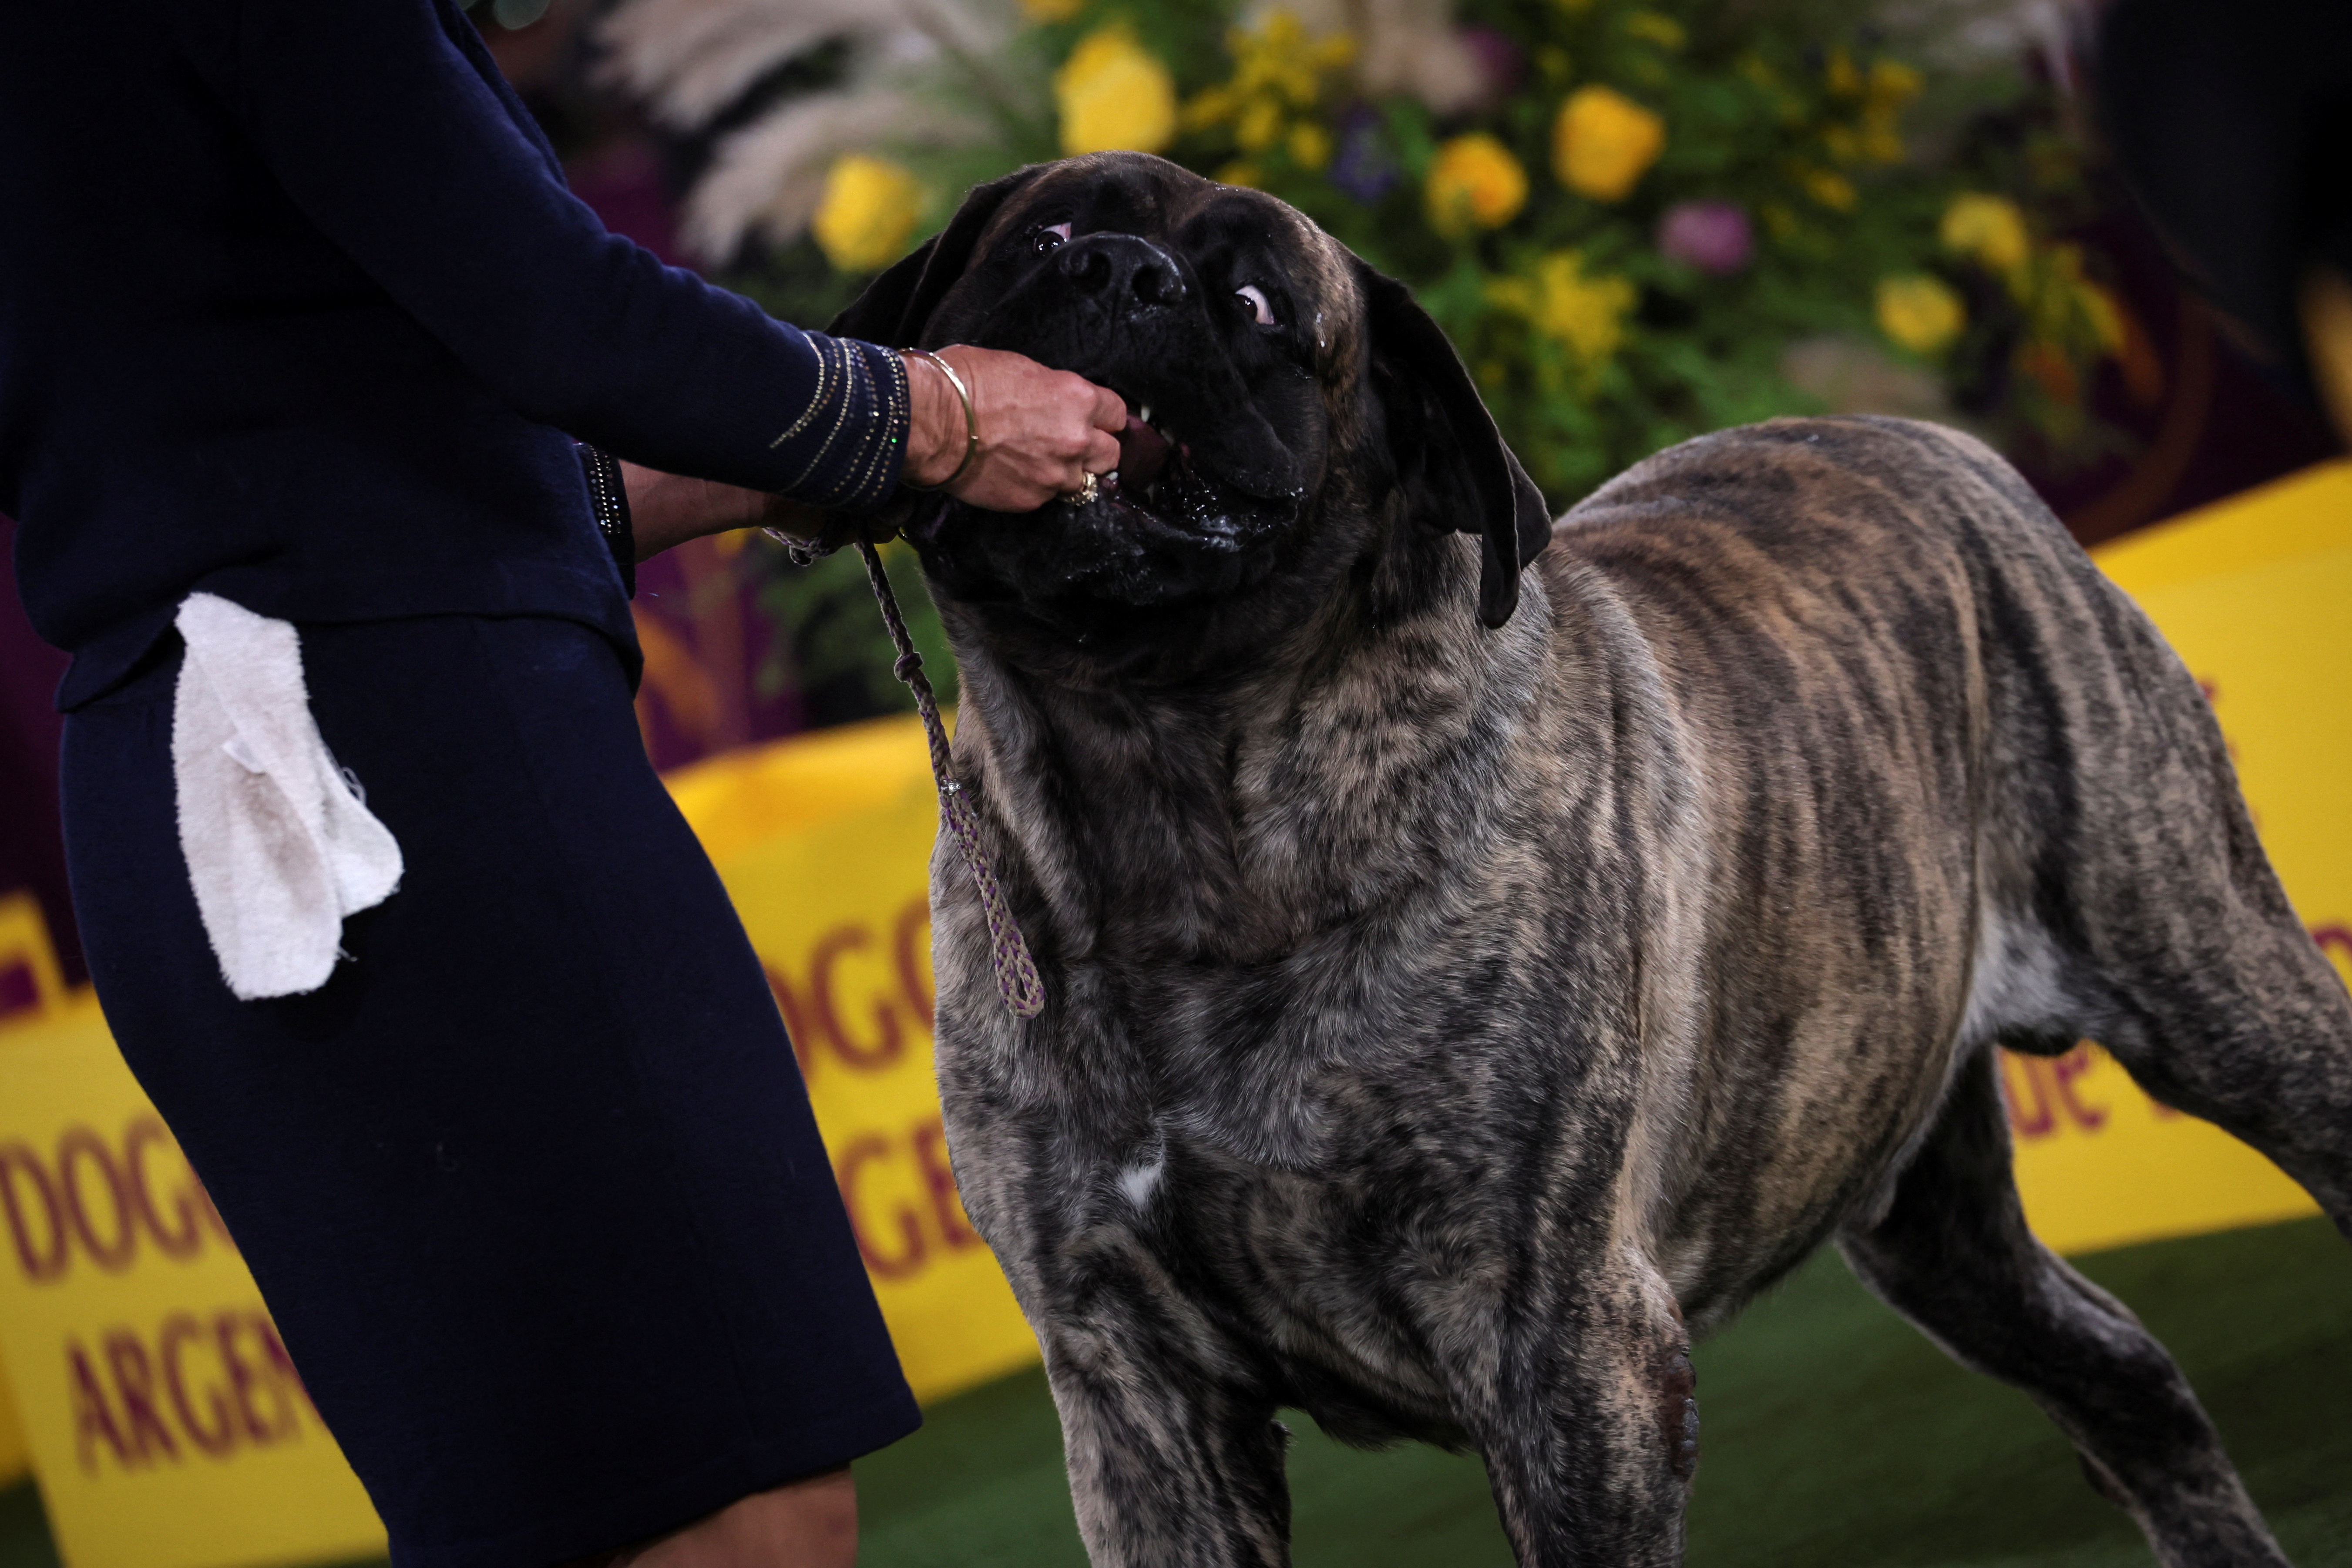 Un entrenador le da una golosina a un perro mastín.
REUTERS/Mike Segar